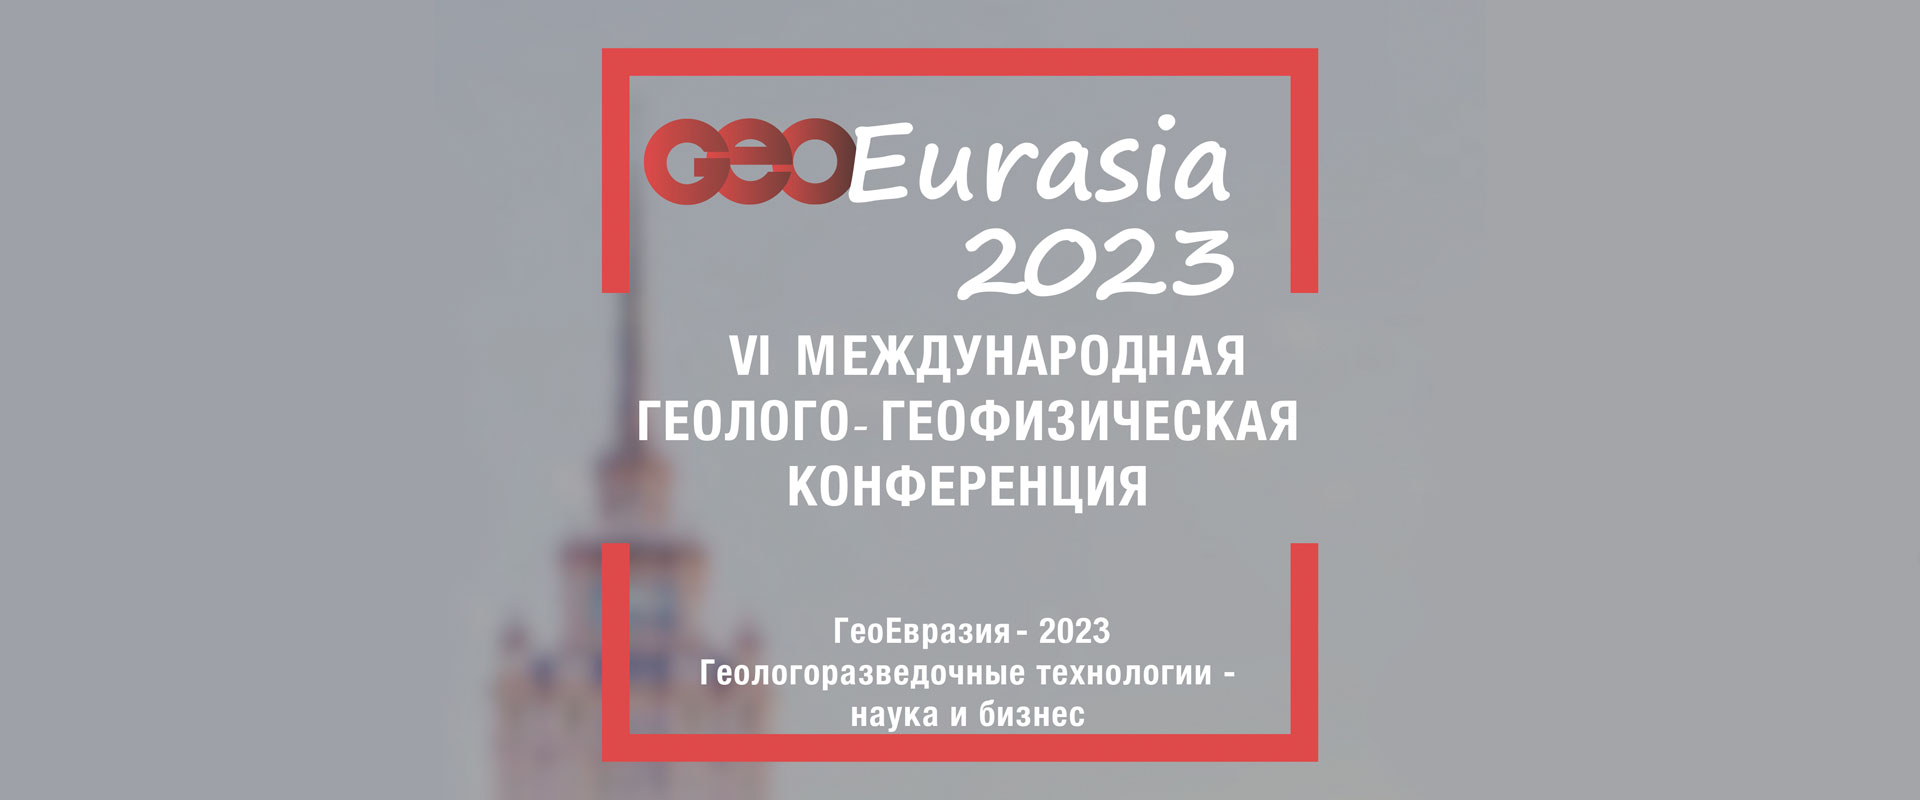 Международная геолого-геофизическая конференция ГеоЕвразия-2023